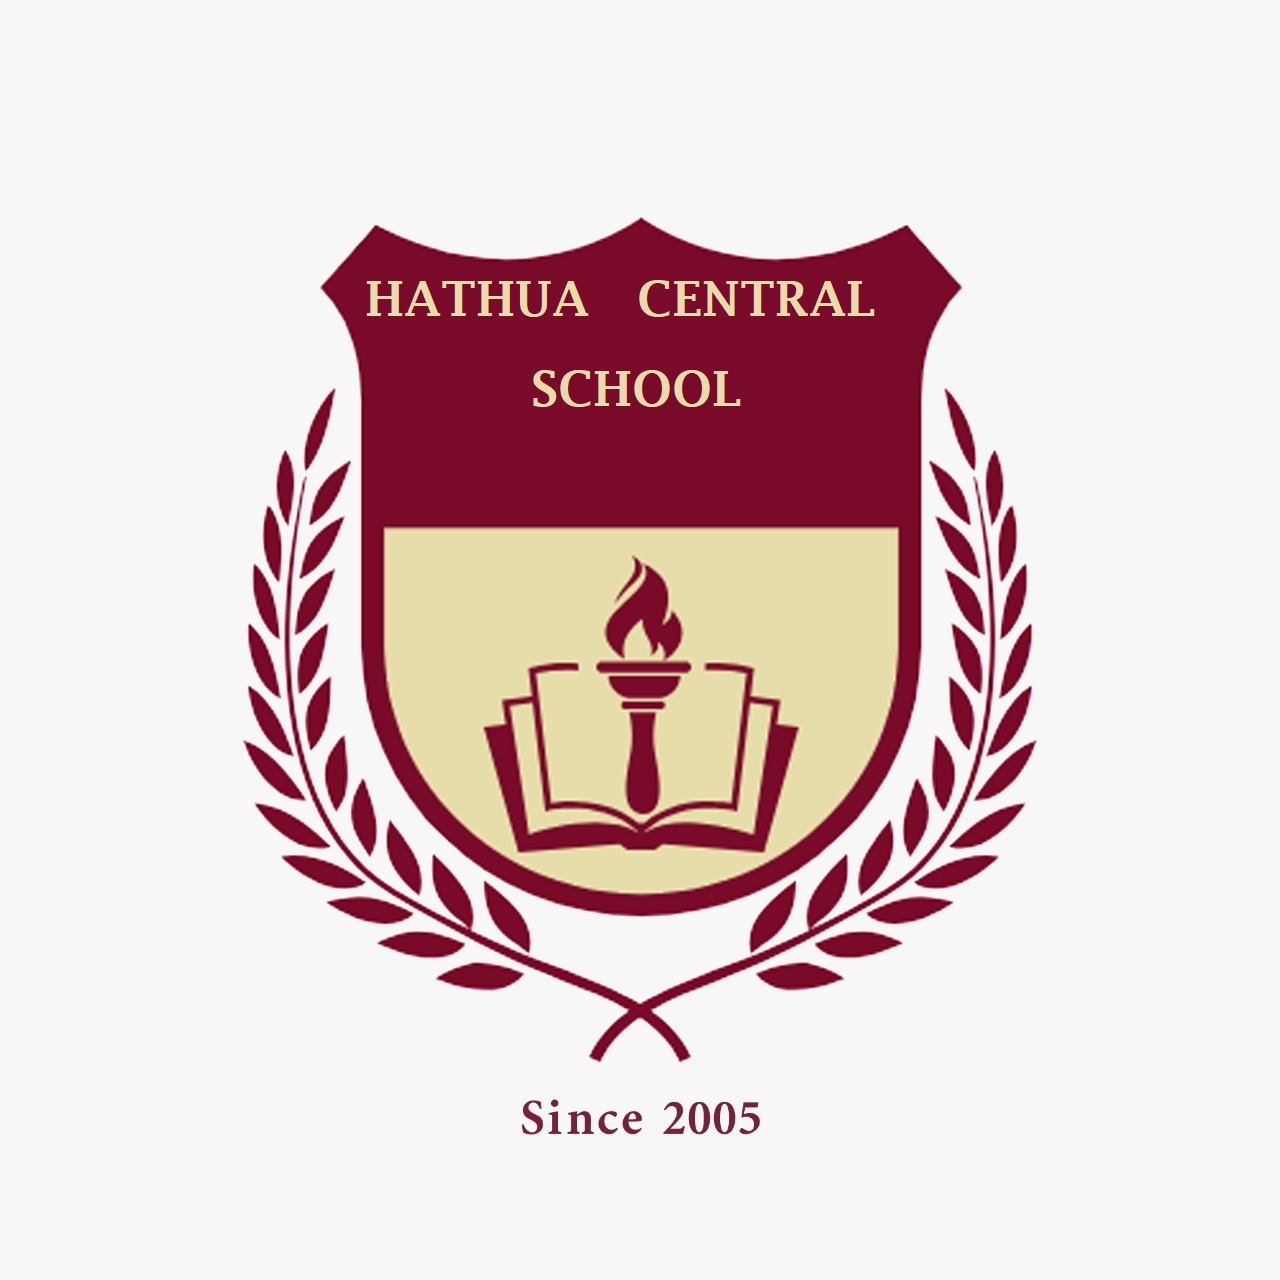 Hathwa Central School|Schools|Education